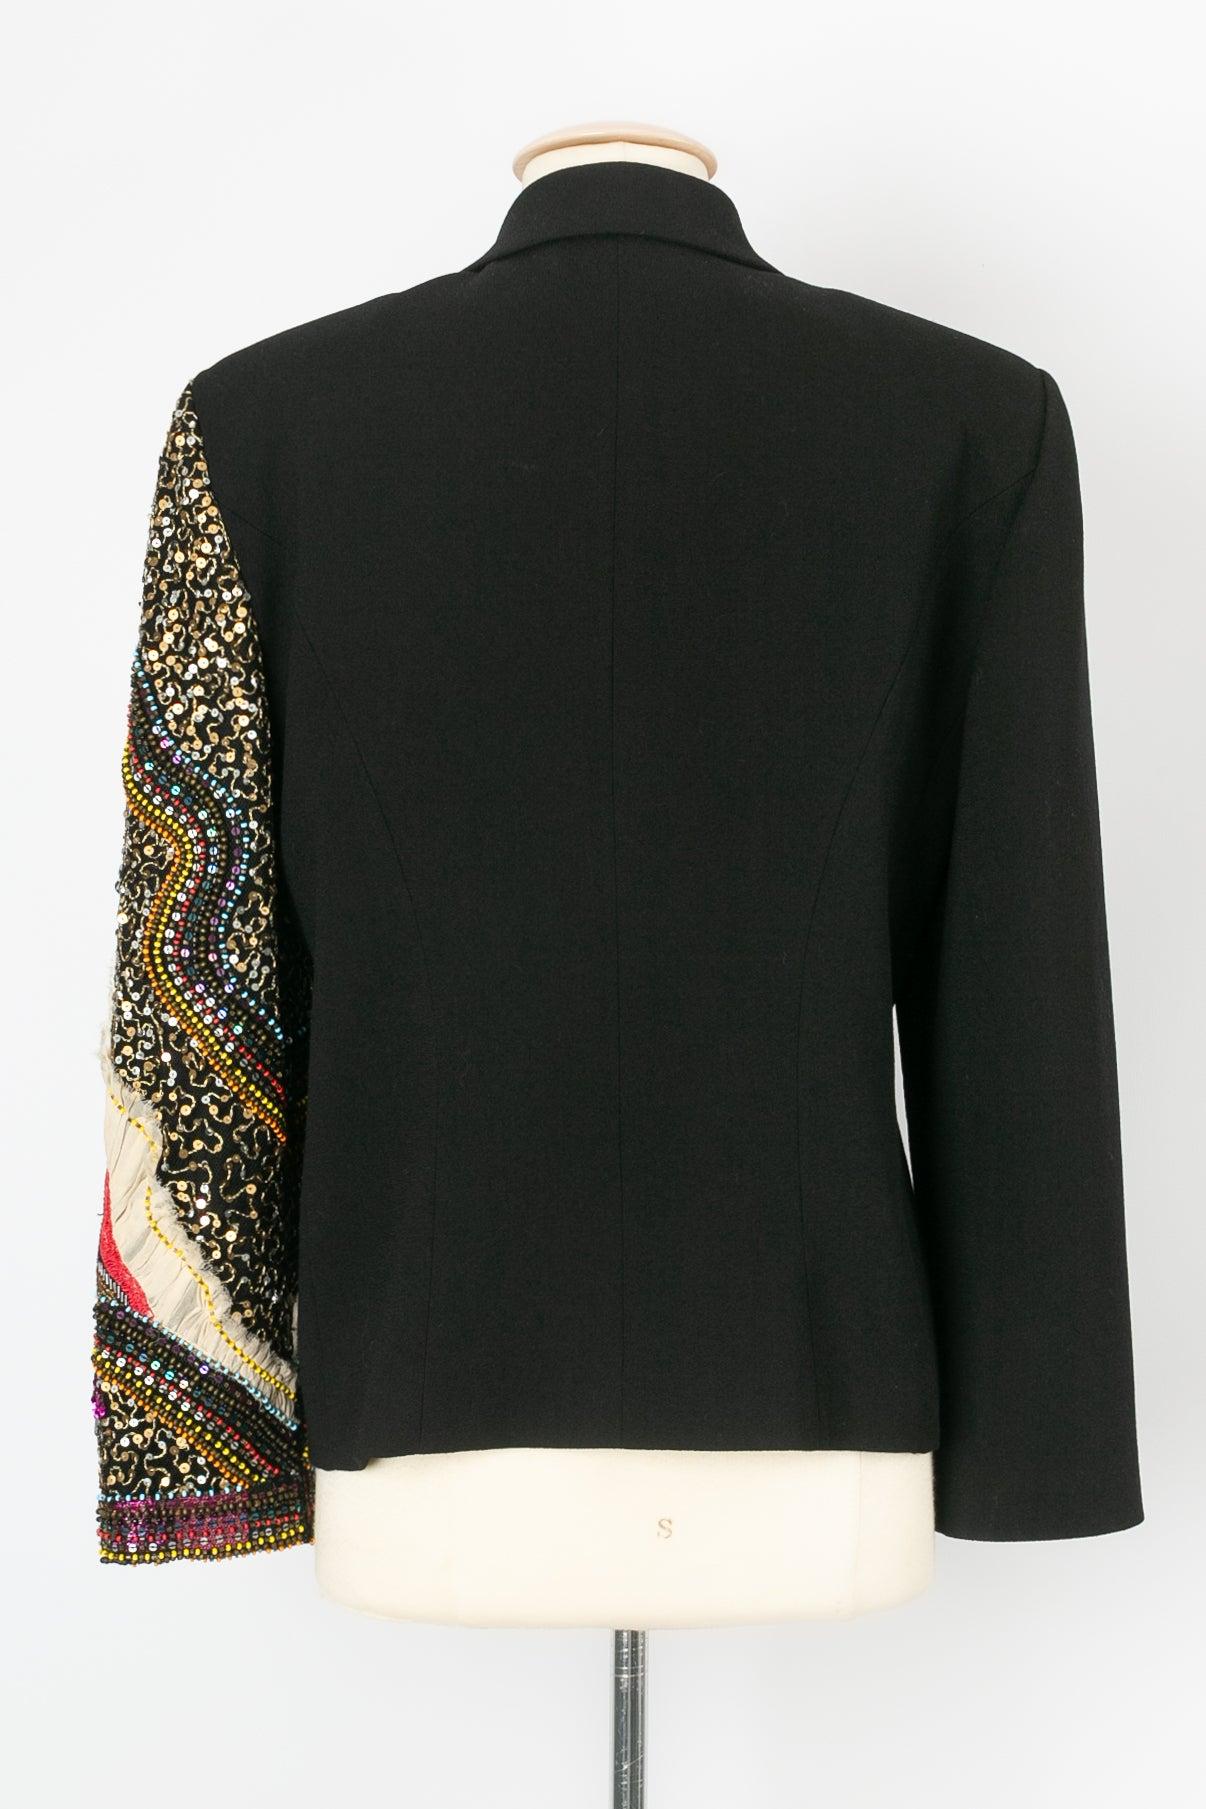 Christian Lacroix Black Wool Blazer Jacket In Excellent Condition For Sale In SAINT-OUEN-SUR-SEINE, FR